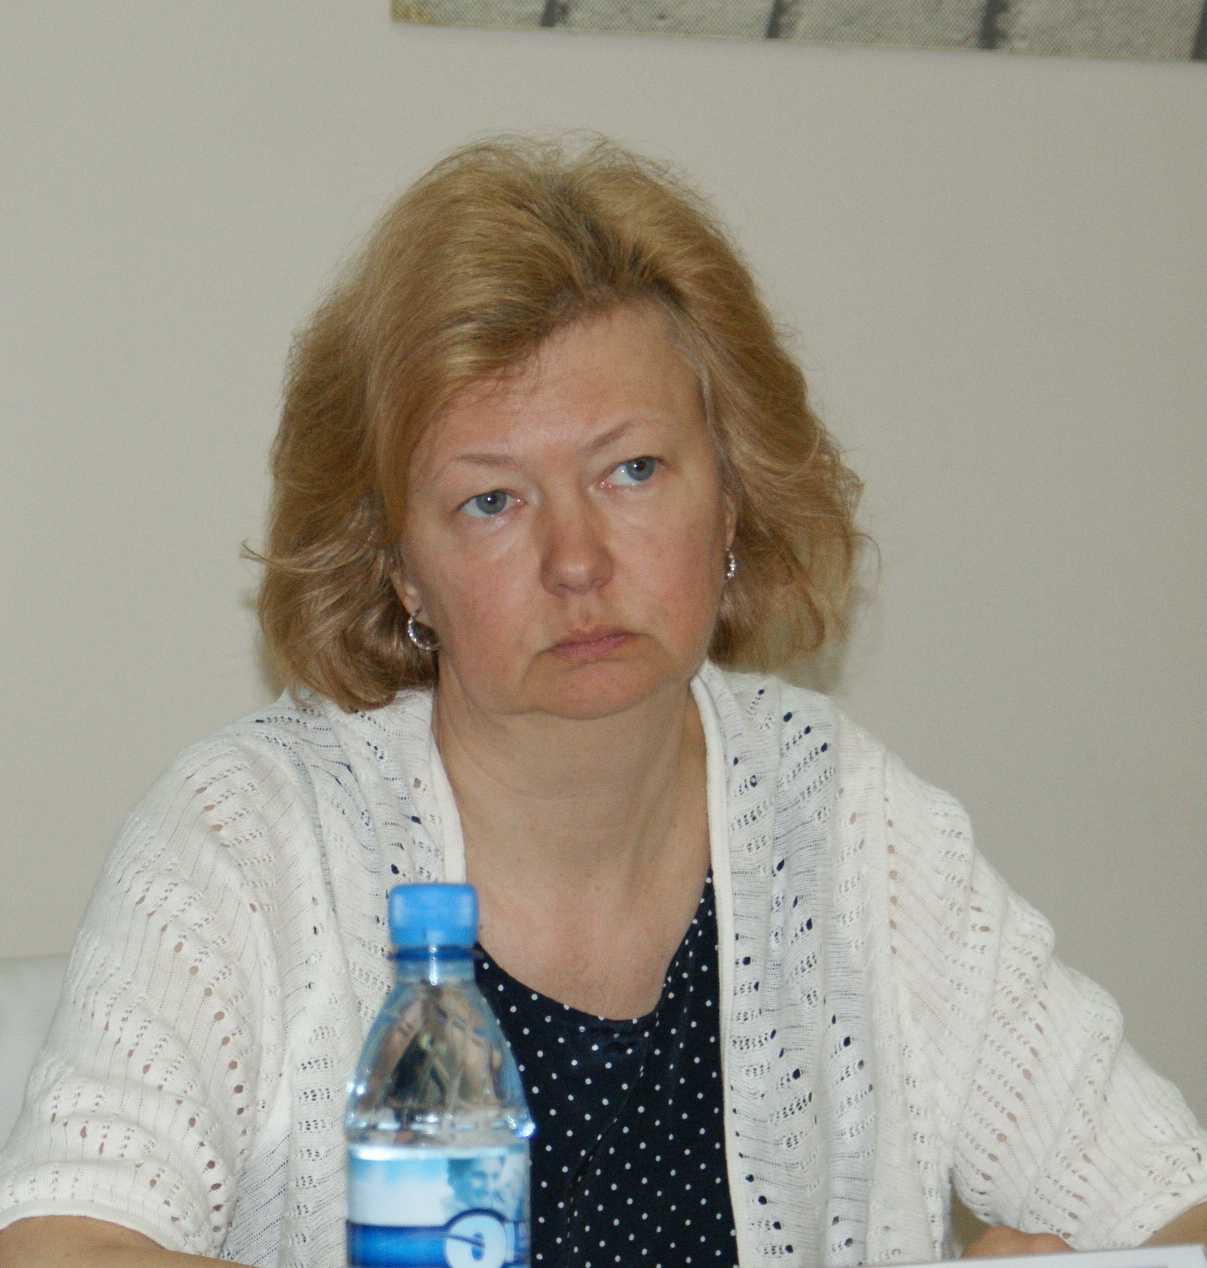 Чурина Елена Николаевна - председатель постоянной комиссии по промышленности, экономике и собственности Законодательного собрания Санкт-Петербурга


